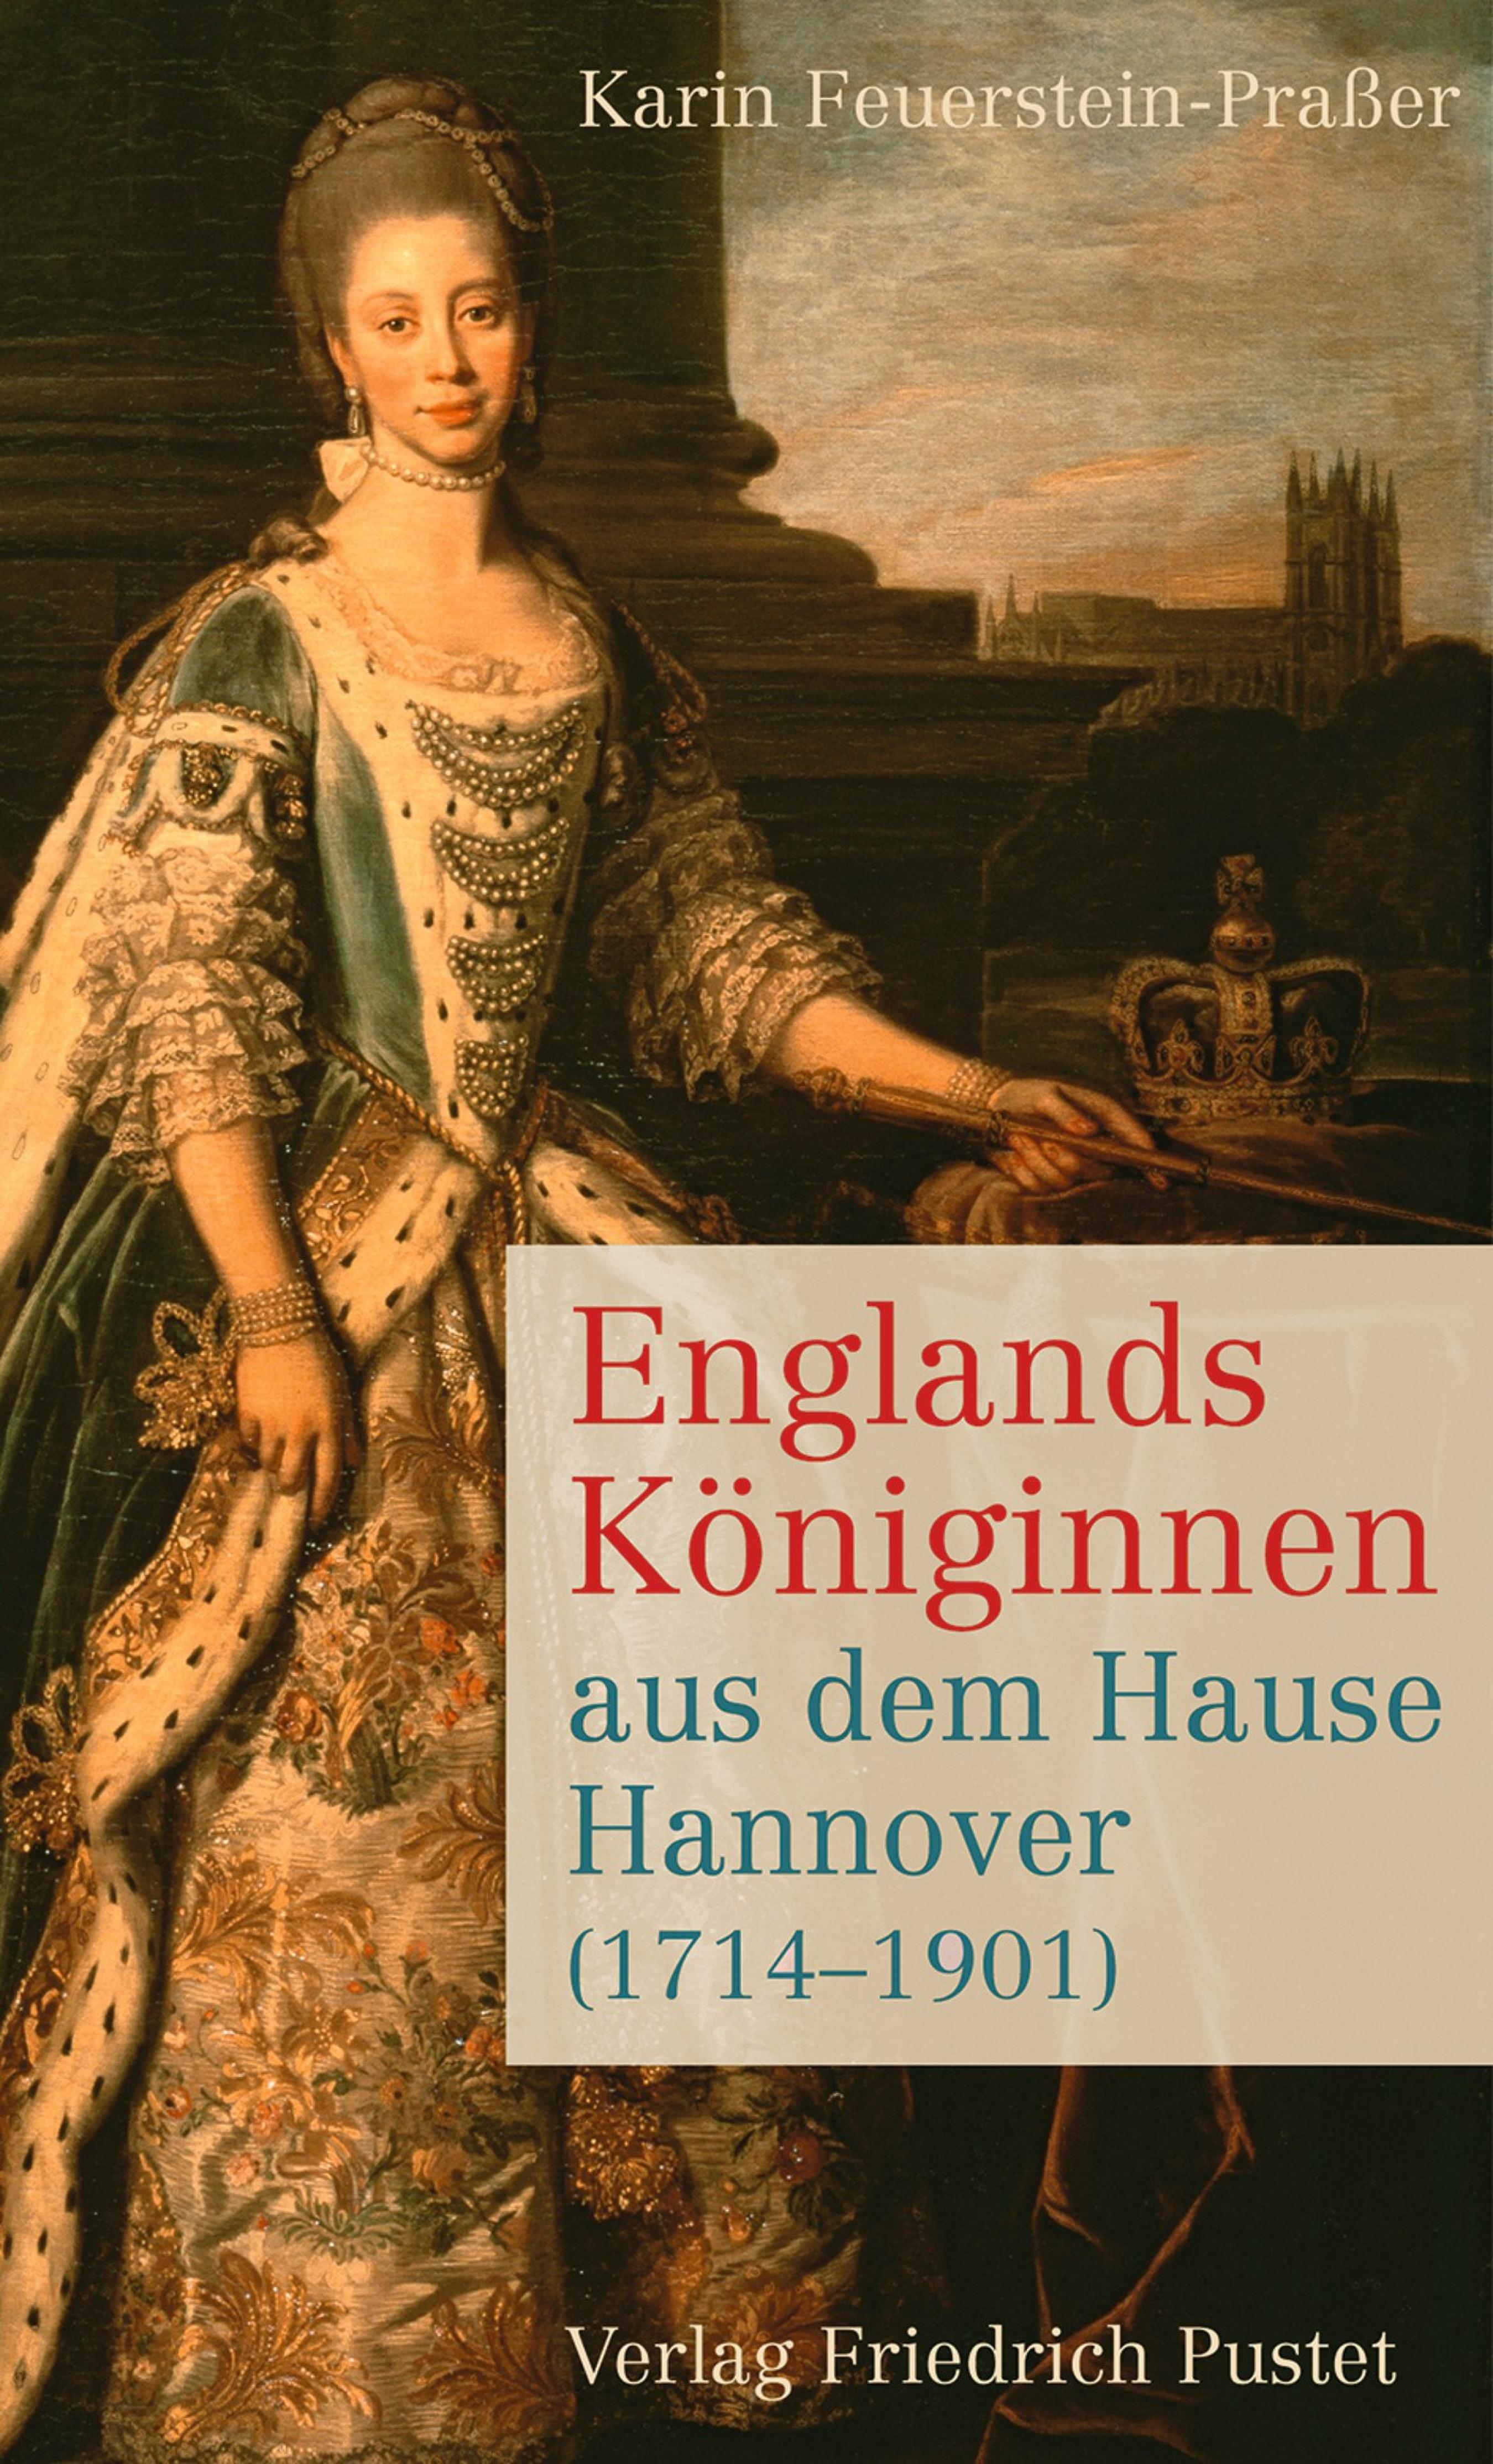 Karin Feuerstein-Praßer Englands Königinnen aus dem Hause Hannover (1714-1901)